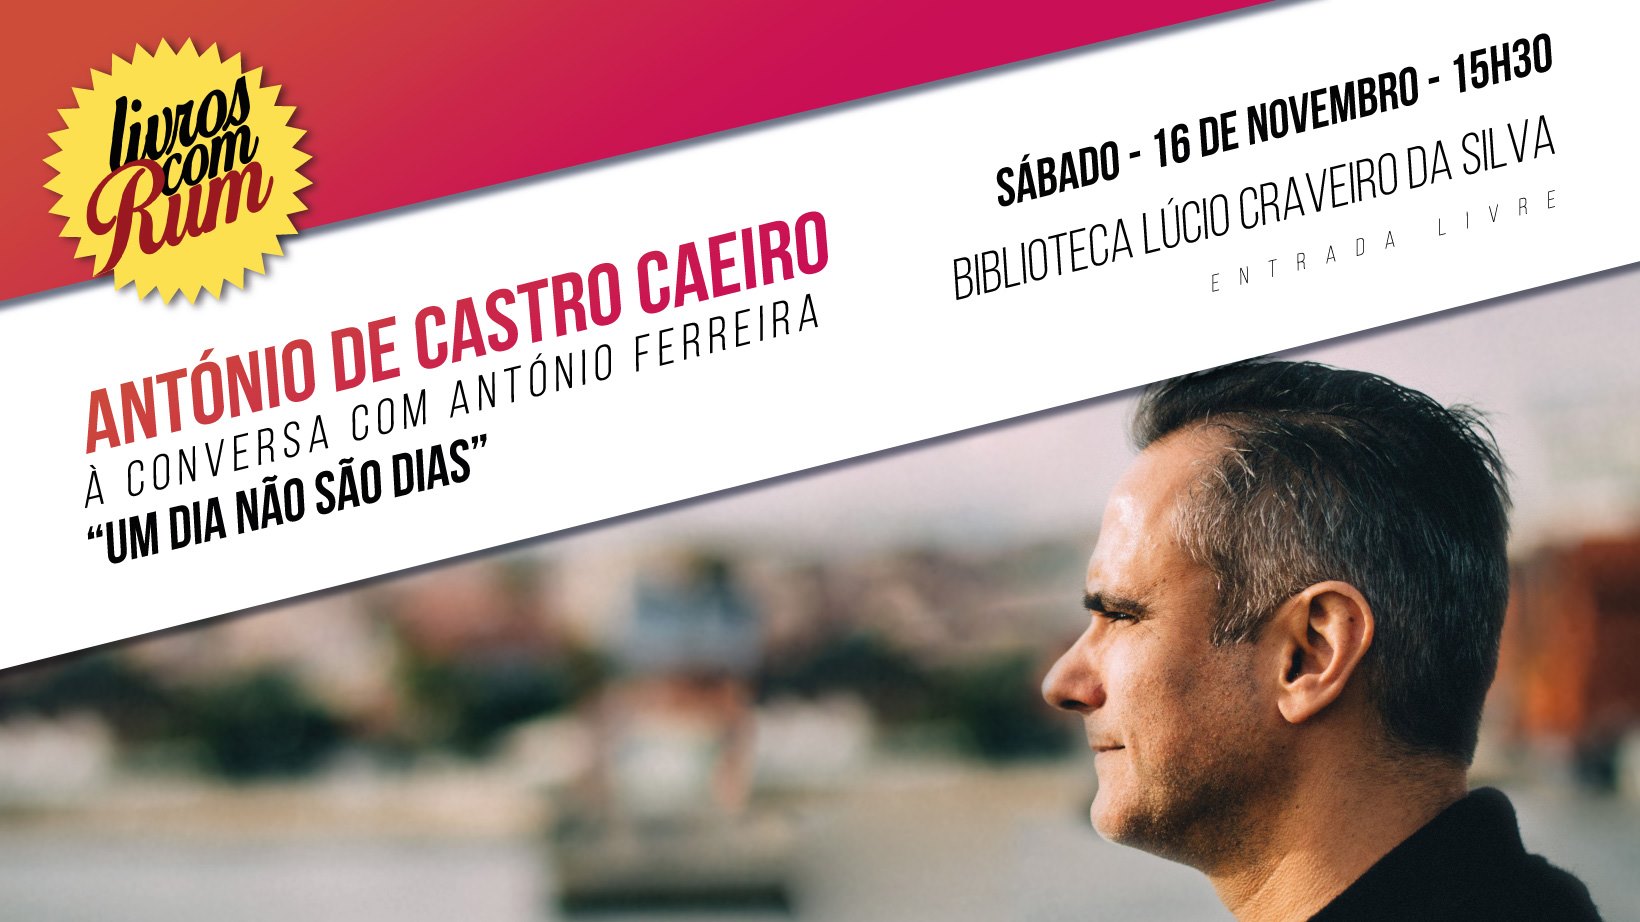 António de Castro Caeiro - 16 de novembro de 2019